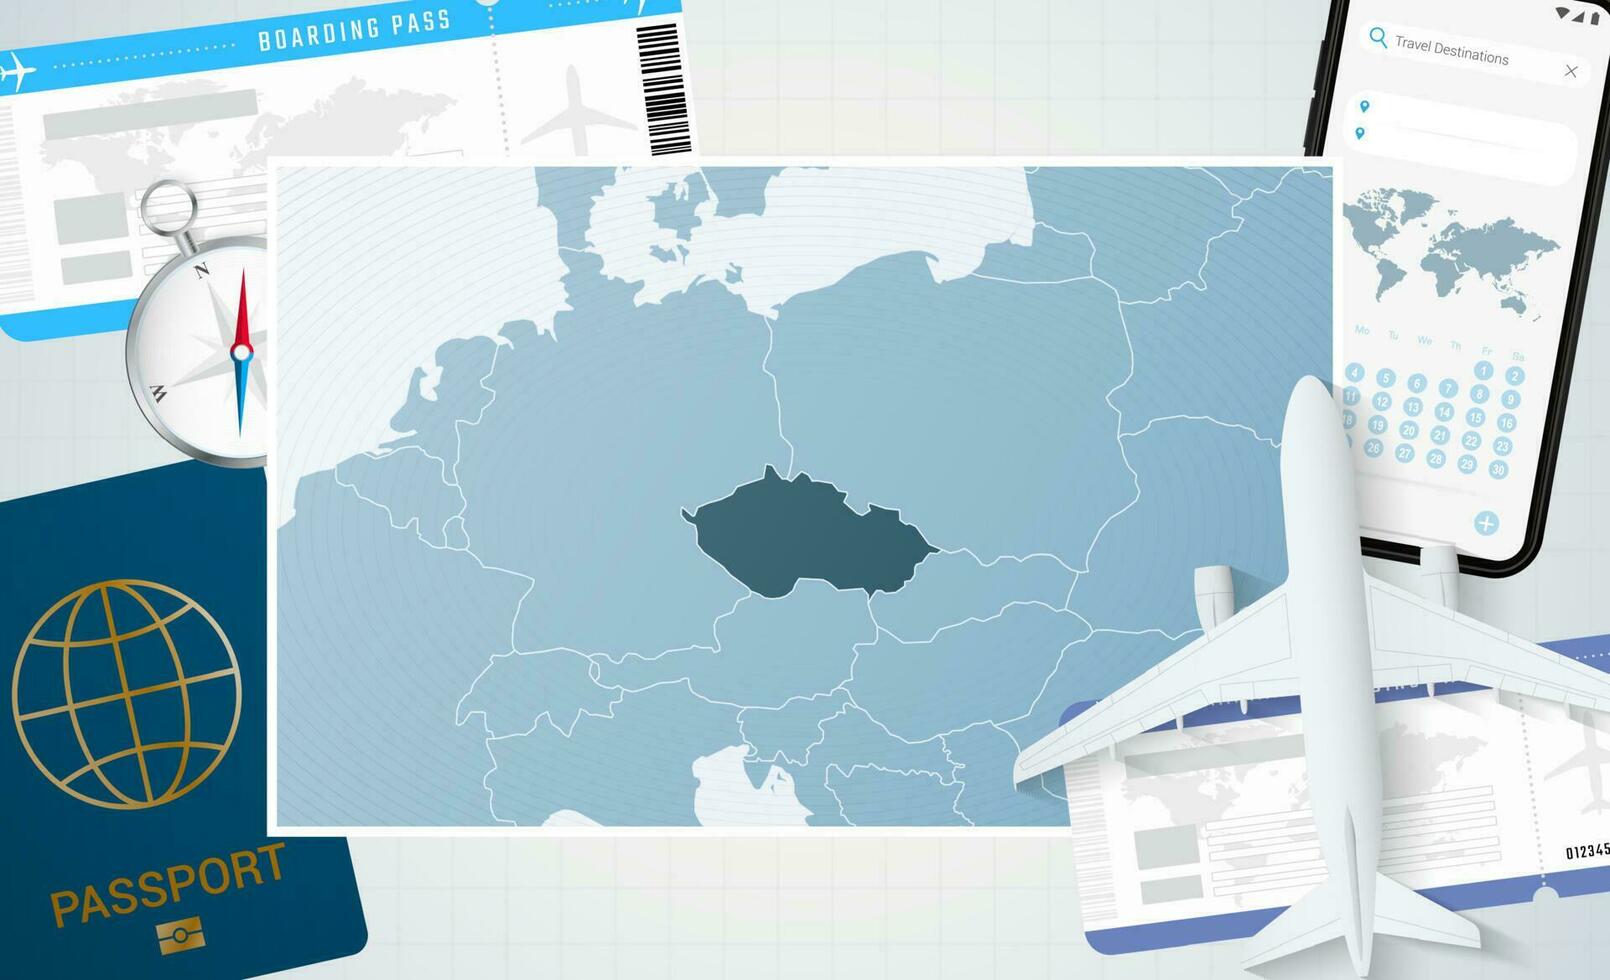 reis naar Tsjechisch republiek, illustratie met een kaart van Tsjechisch republiek. achtergrond met vliegtuig, cel telefoon, paspoort, kompas en kaartjes. vector